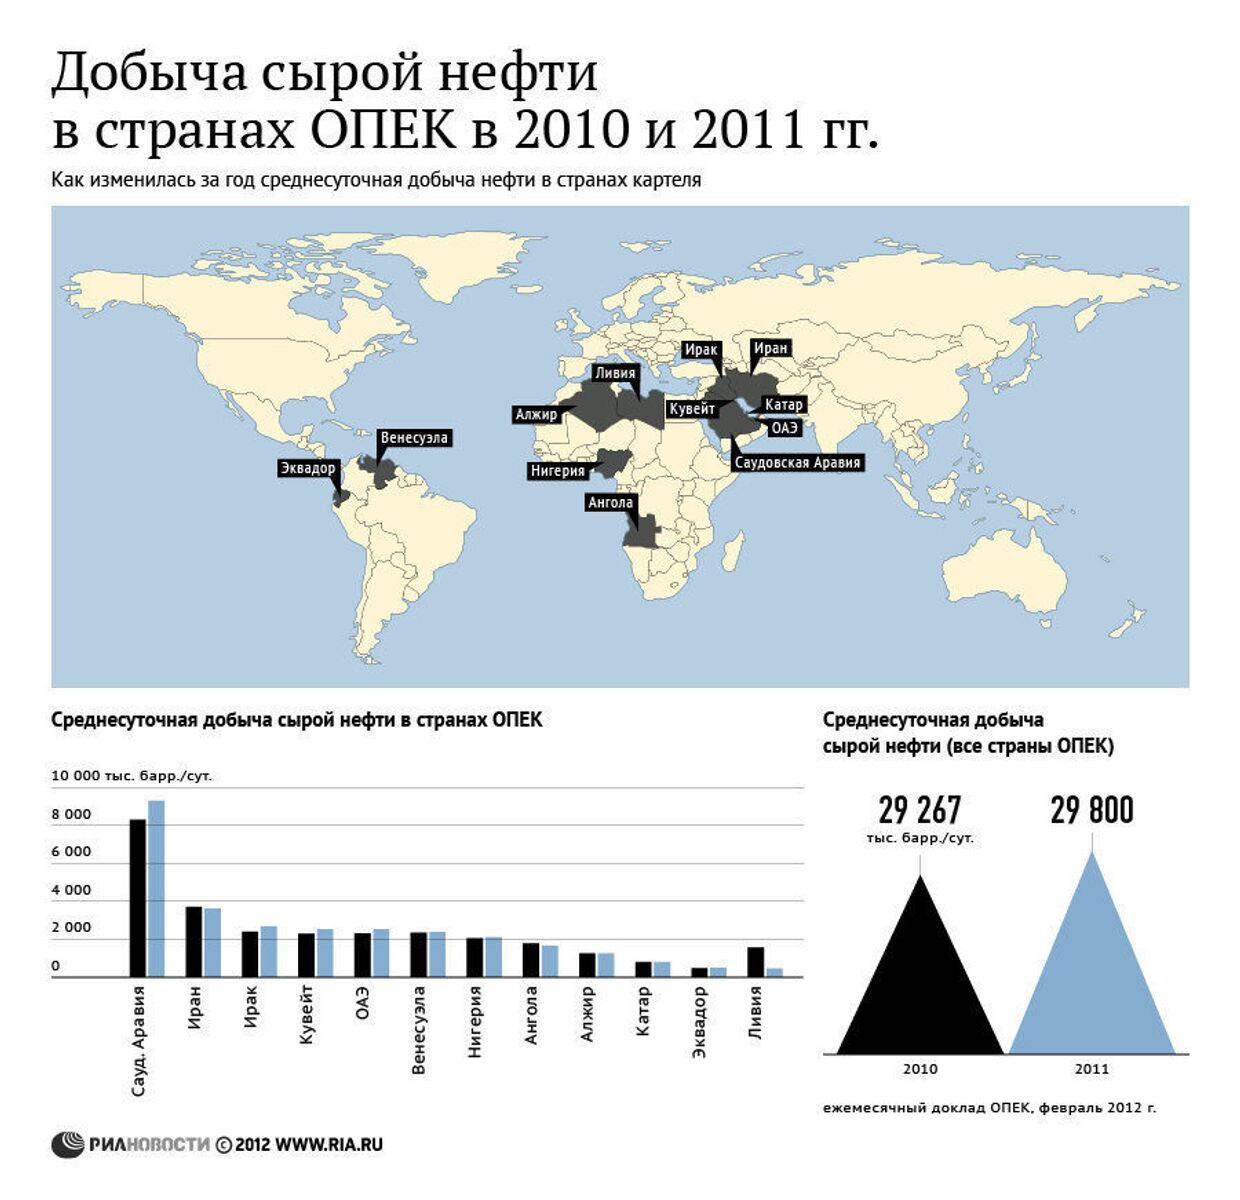 Добыча нефти в странах ОПЕК в 2010-2011